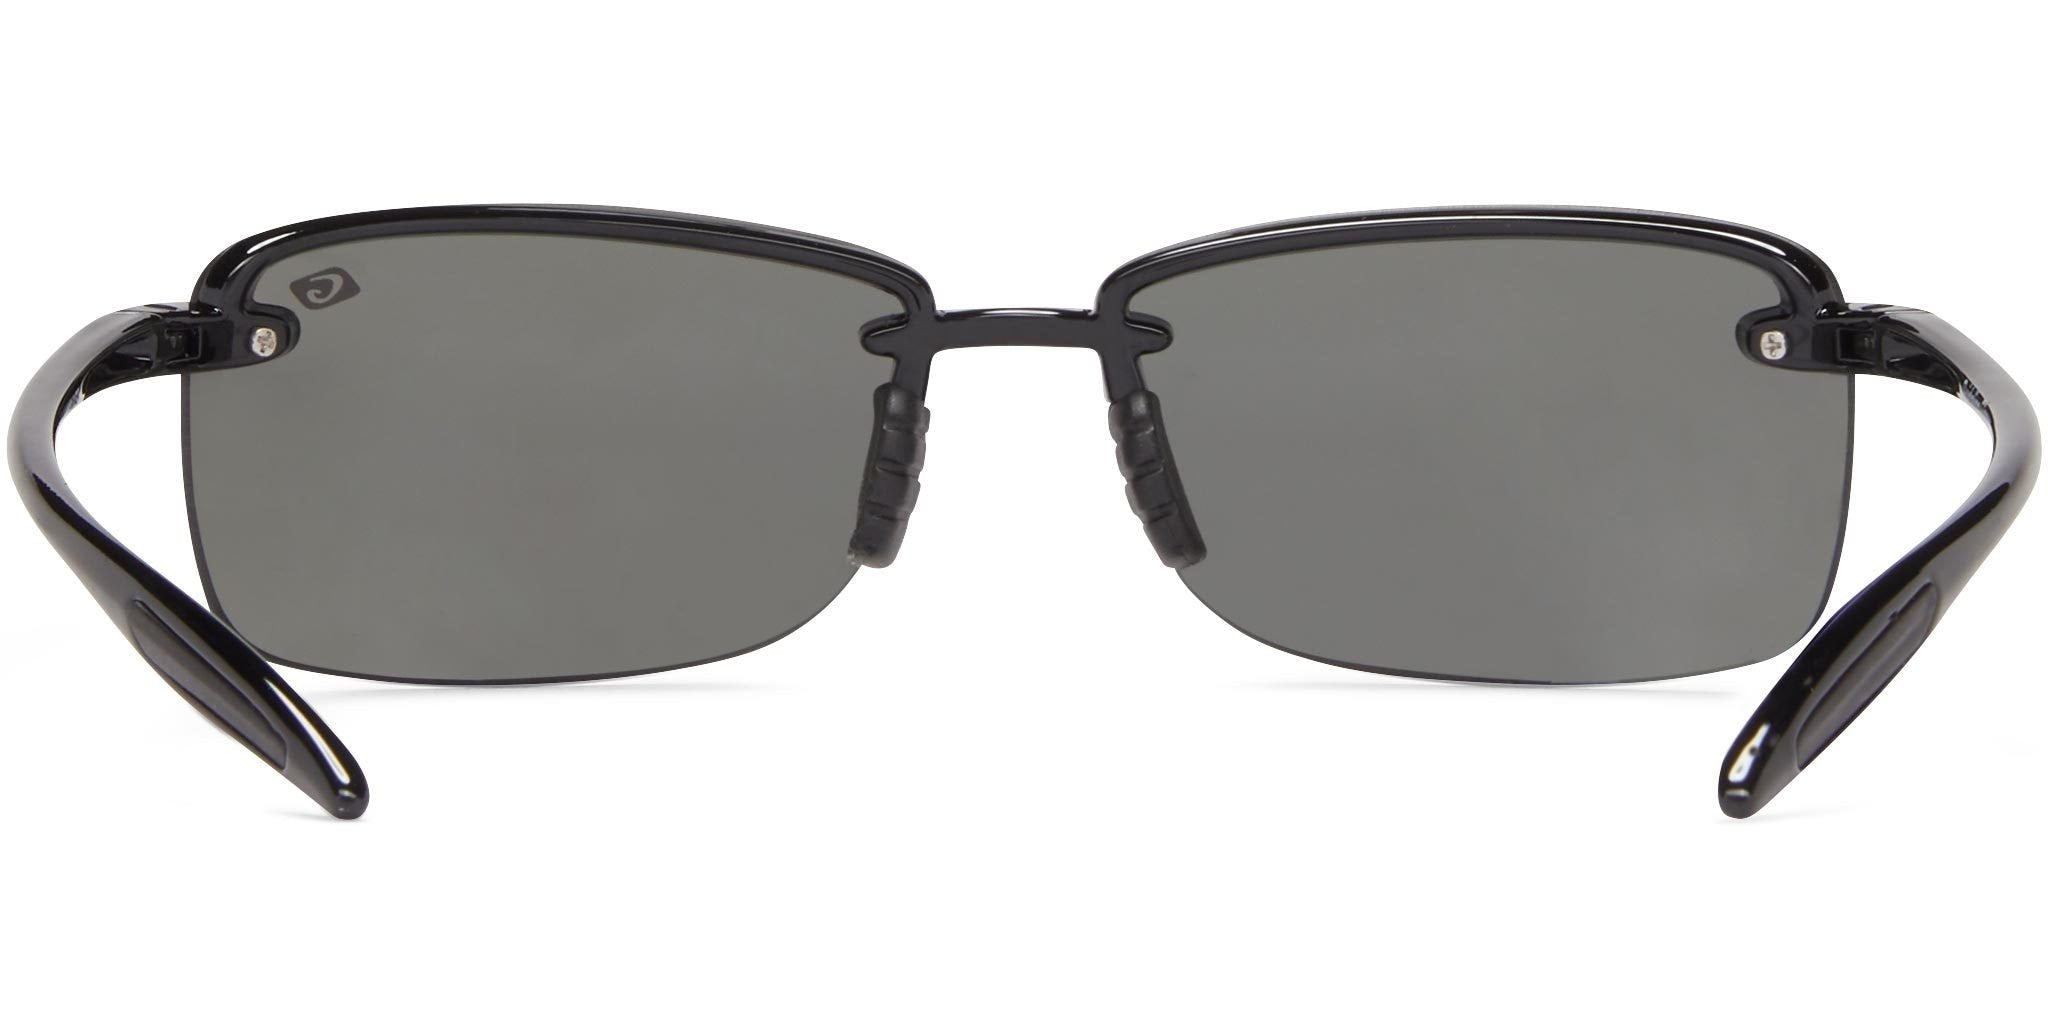 https://icueyewear.com/cdn/shop/products/del-mar-bifocal-polarized-sunglasses-guideline-eyegear-icu-eyewear_231_2048x.jpg?v=1628798971